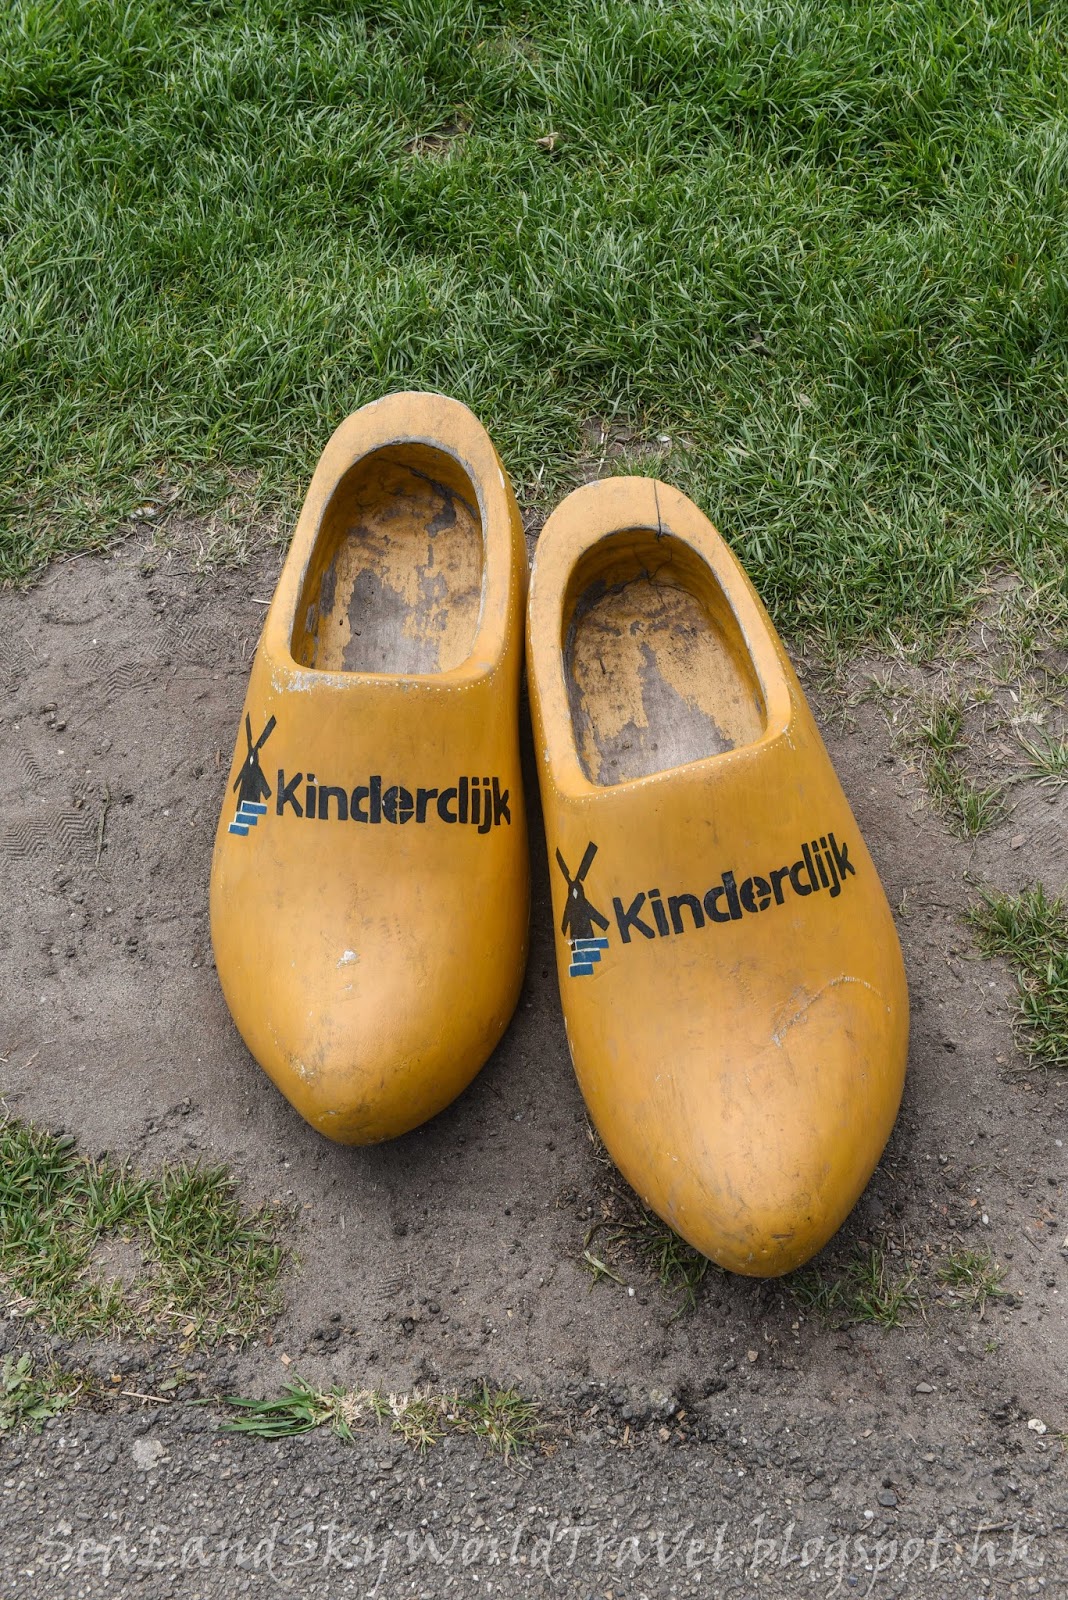 荷蘭鬱金香自由行行第一天: 小孩提防Kinderdjik